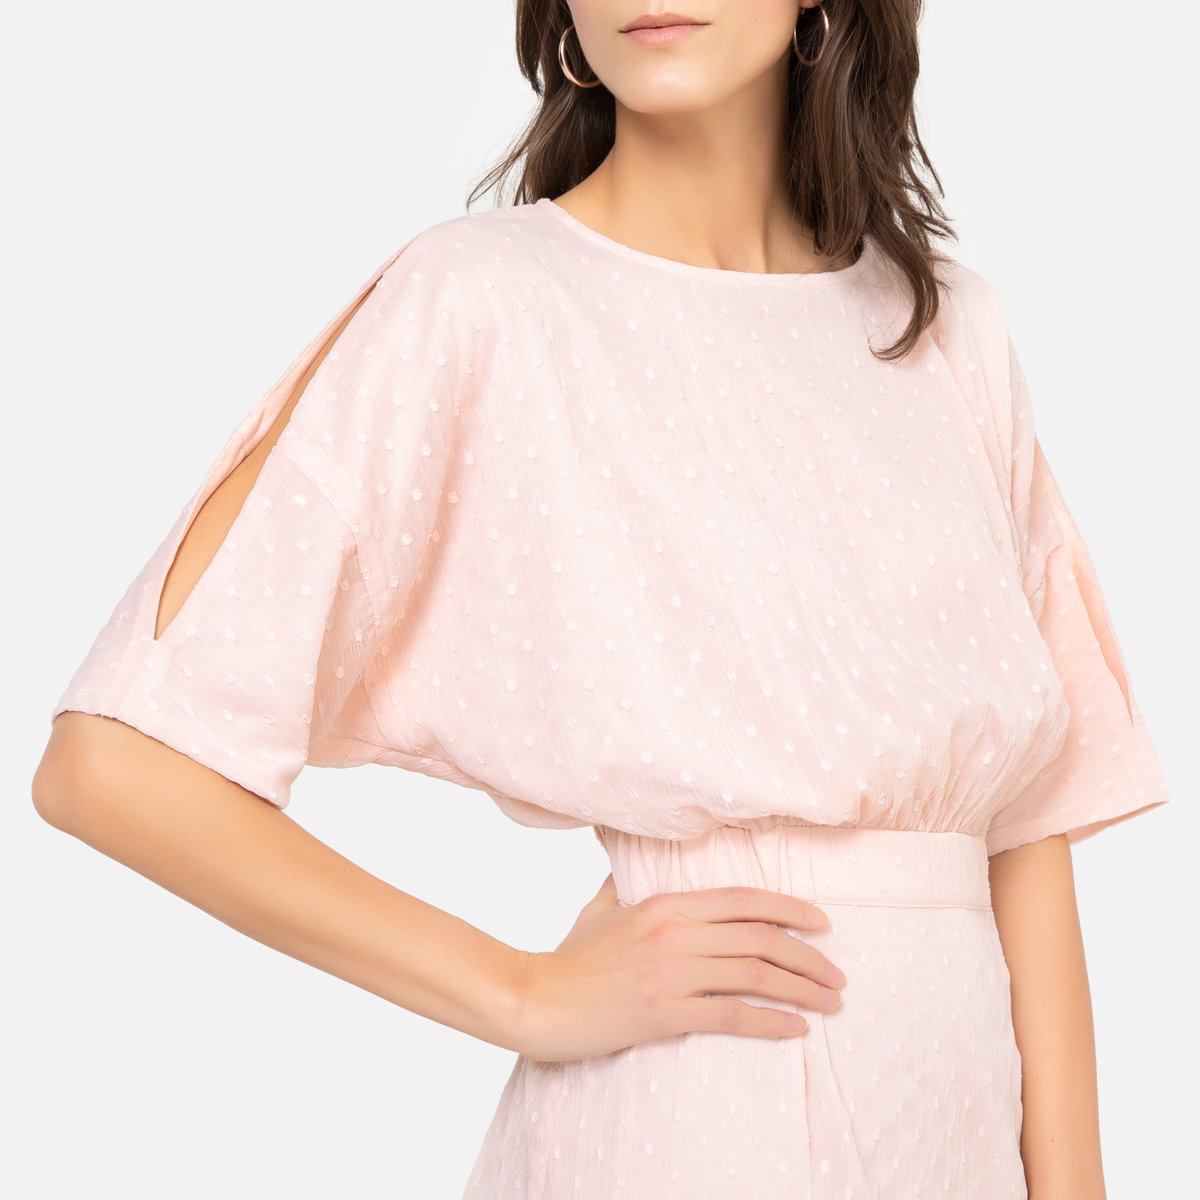 Платье La Redoute Струящееся с вышивкой гладью и рукавами до локтей 52 (FR) - 58 (RUS) розовый, размер 52 (FR) - 58 (RUS) Струящееся с вышивкой гладью и рукавами до локтей 52 (FR) - 58 (RUS) розовый - фото 3